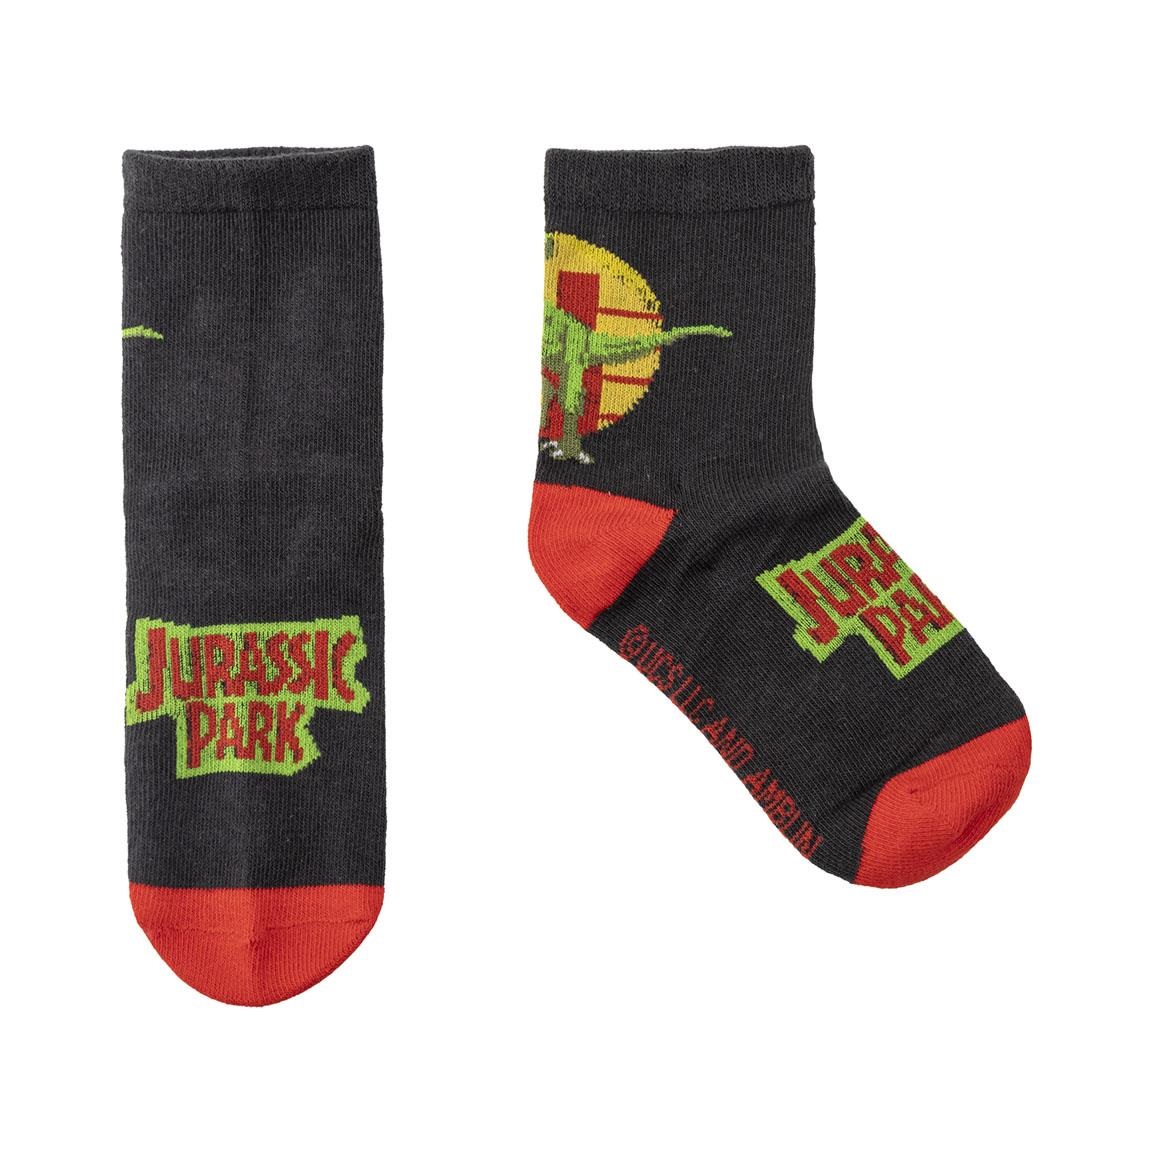 Κάλτσες 3 αδα (3 pack)  Jurassic Park  2900001568